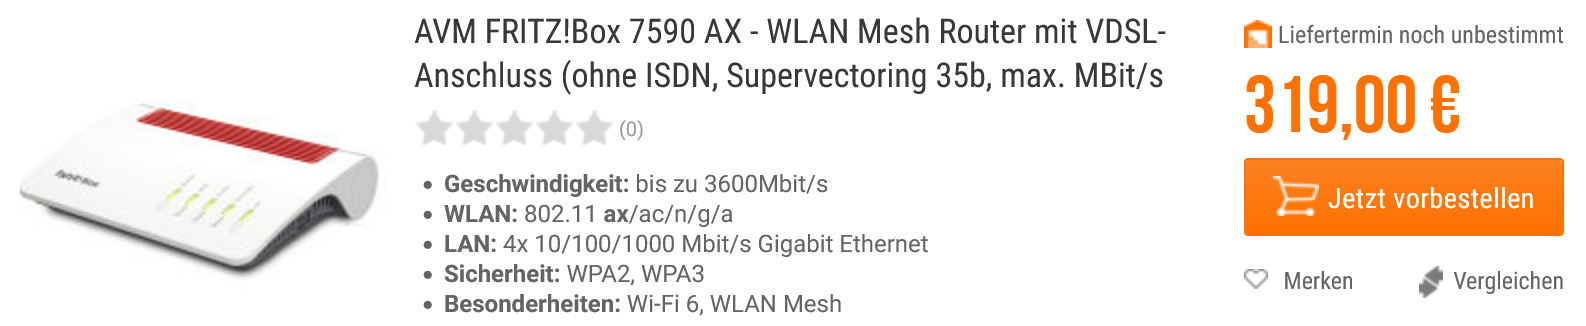 Die neue Revision der AVM Fritz!Box 7590 AX ohne ISDN-Anschluss